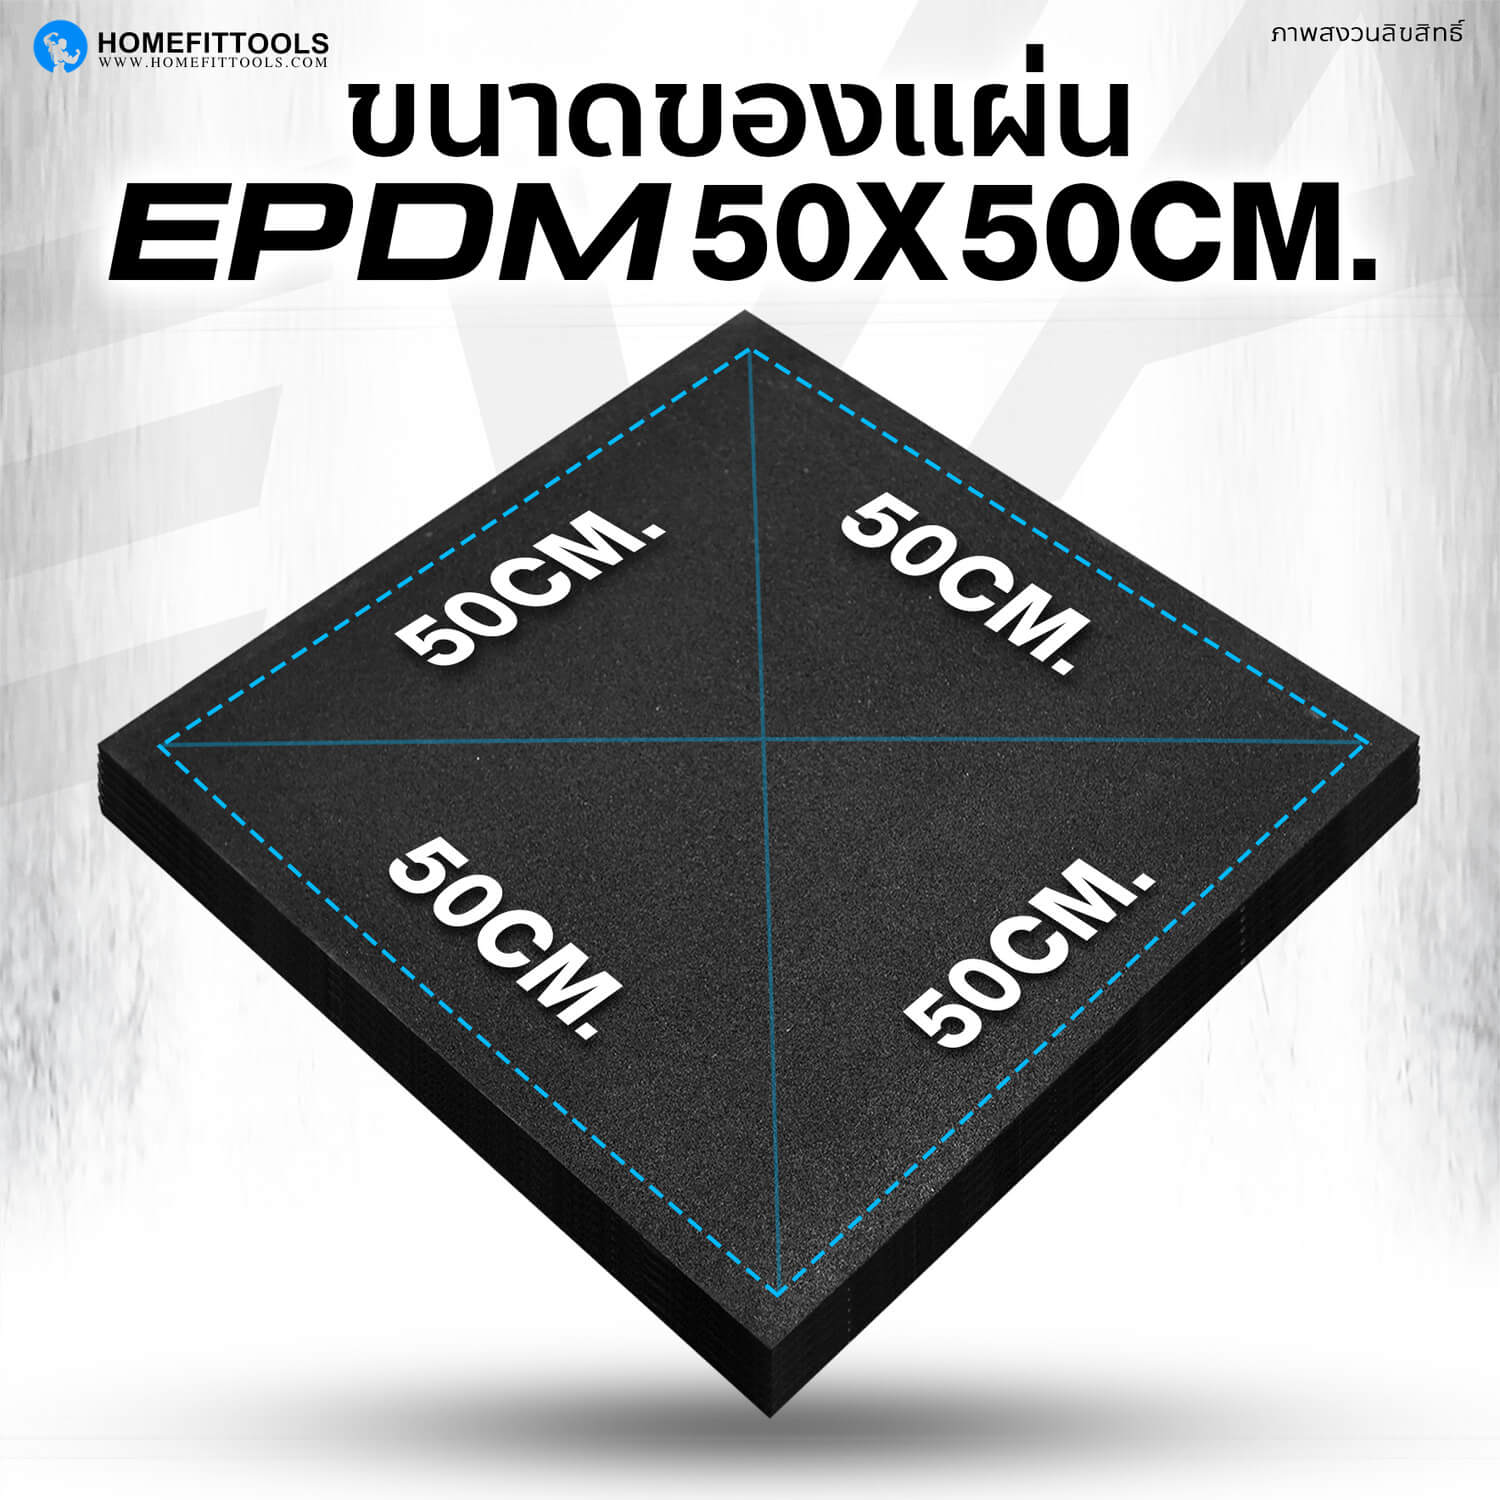 ขนาดของ Rubber Tile C5 แผ่นยางปูพื้น EPDM 50x50 ซม.